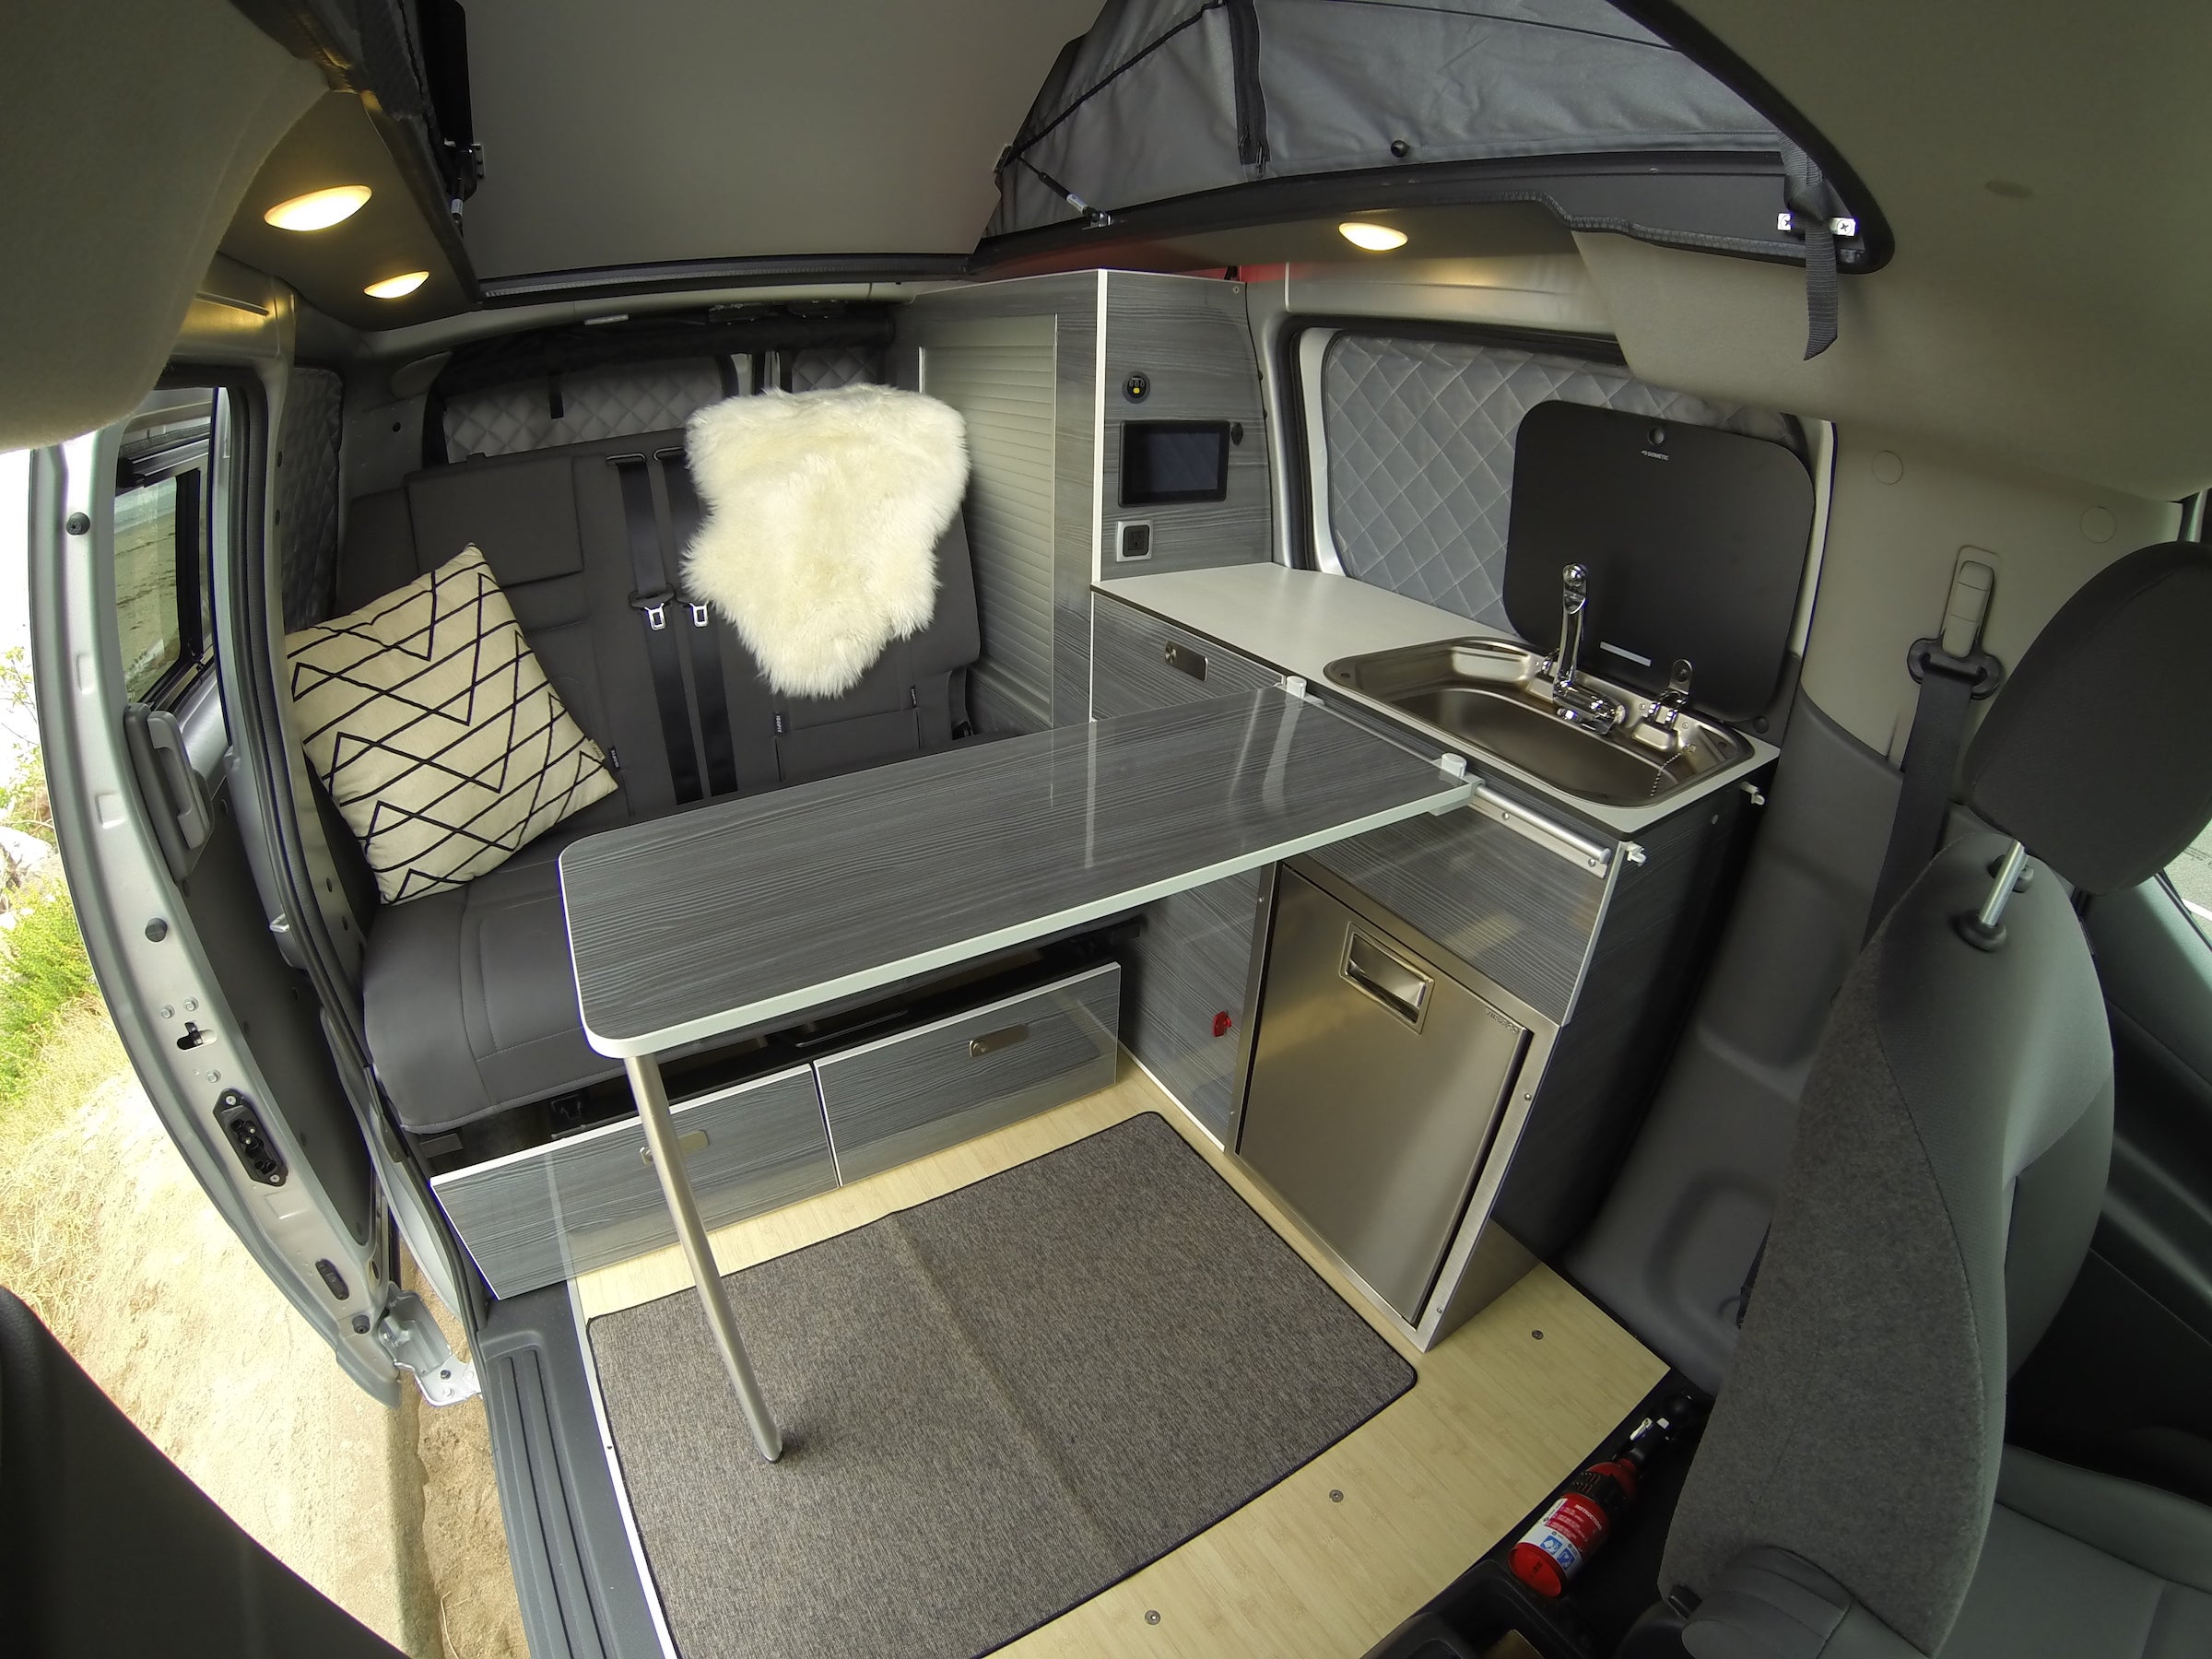 The van’s interior